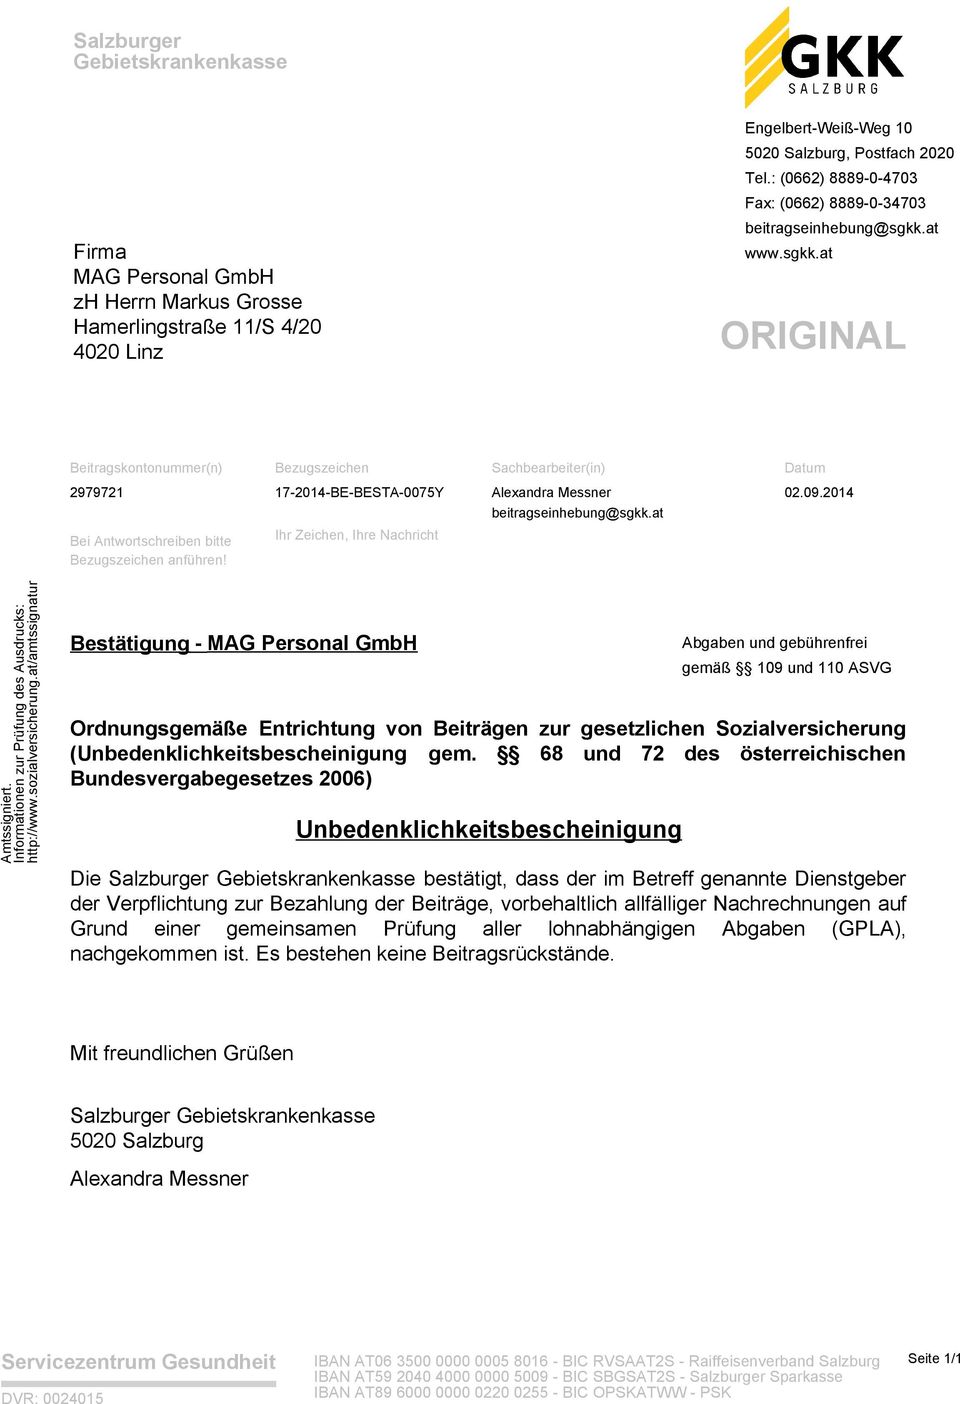 68 und 72 des österreichischen Die Salzburger Gebietskrankenkasse bestätigt, dass der im Betreff genannte Dienstgeber der Verpflichtung zur Bezahlung der Beiträge, vorbehaltlich allfälliger